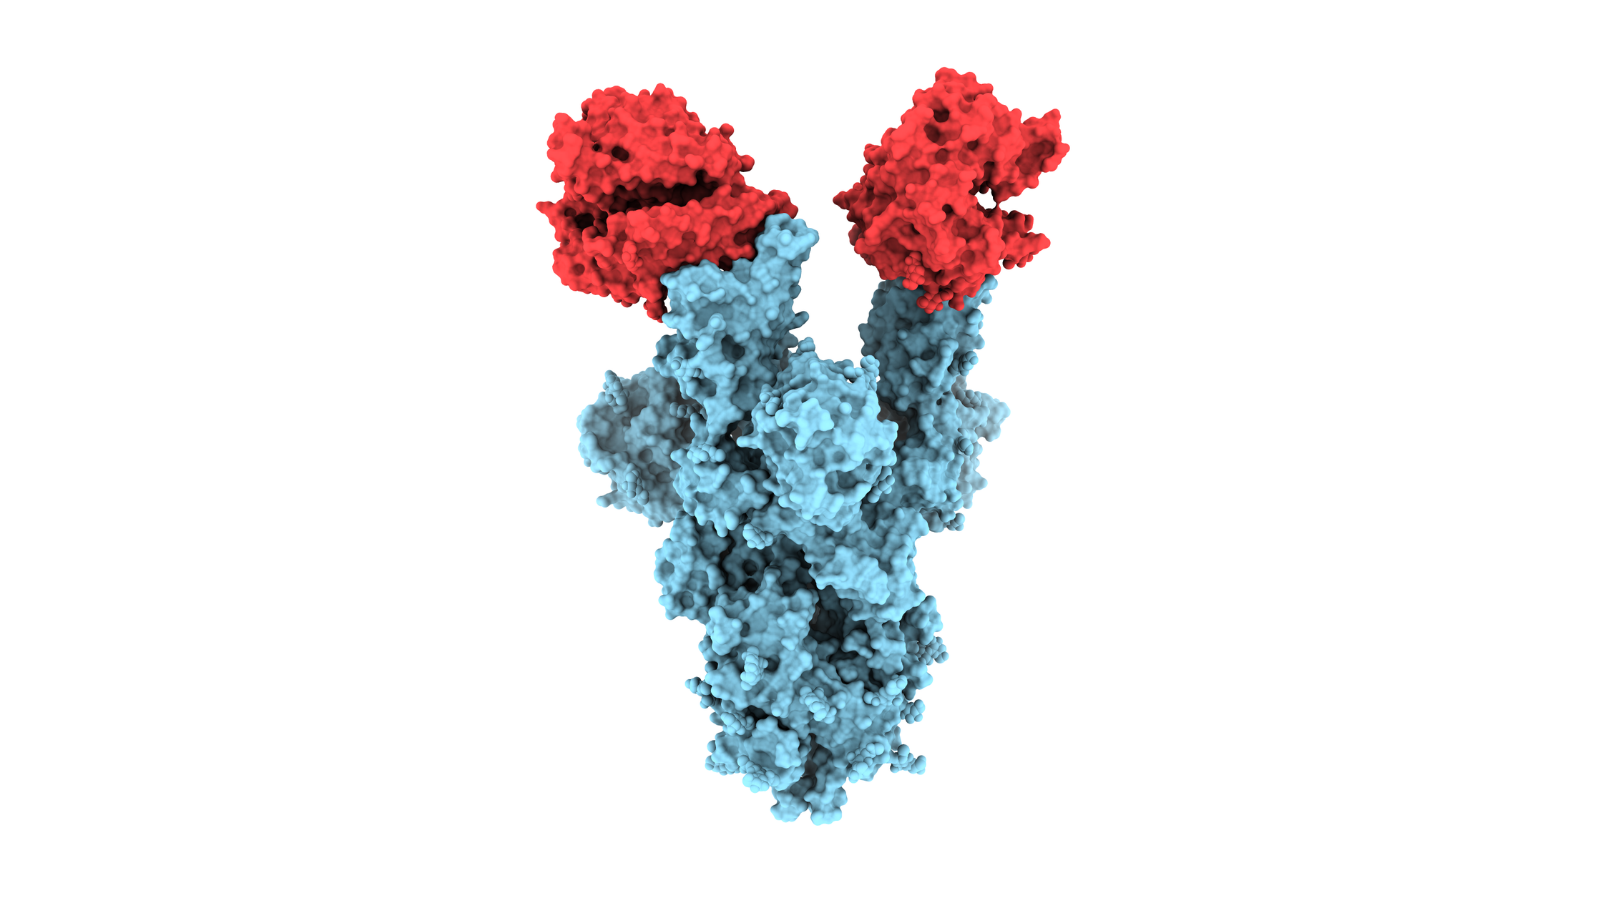 Image of coronavirus N501Y spike protein mutant